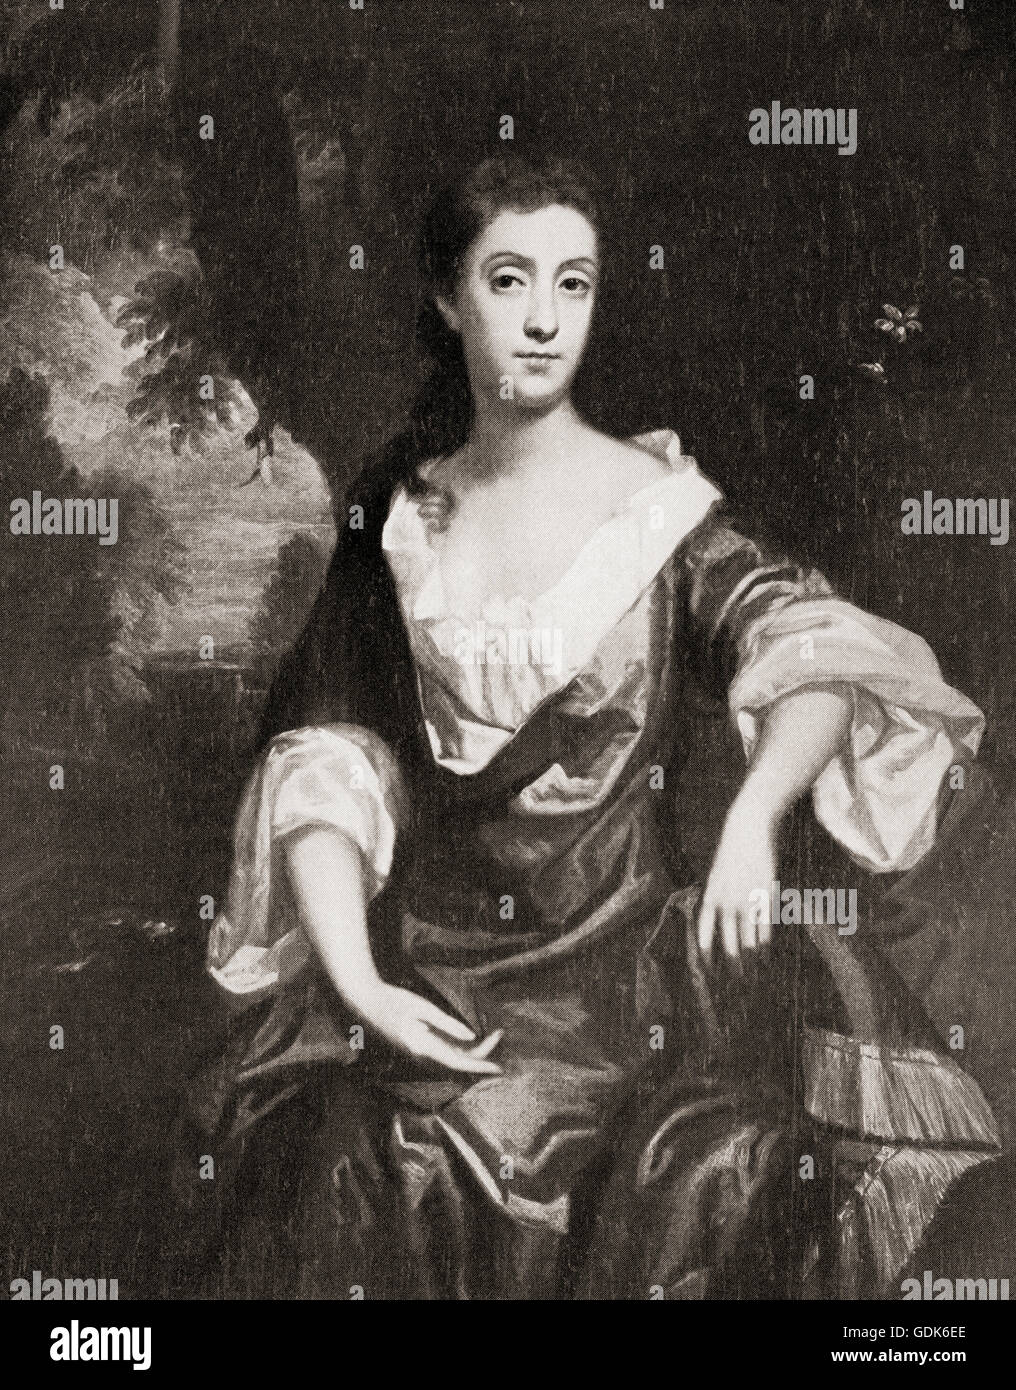 Emilia Butler, contessa di Ossory, c.1635 - 1688, nato Emilia van Nassau-Beverweerd. Cortigiano anglo-olandese. Dopo la pittura di Sir Peter Lely. Foto Stock